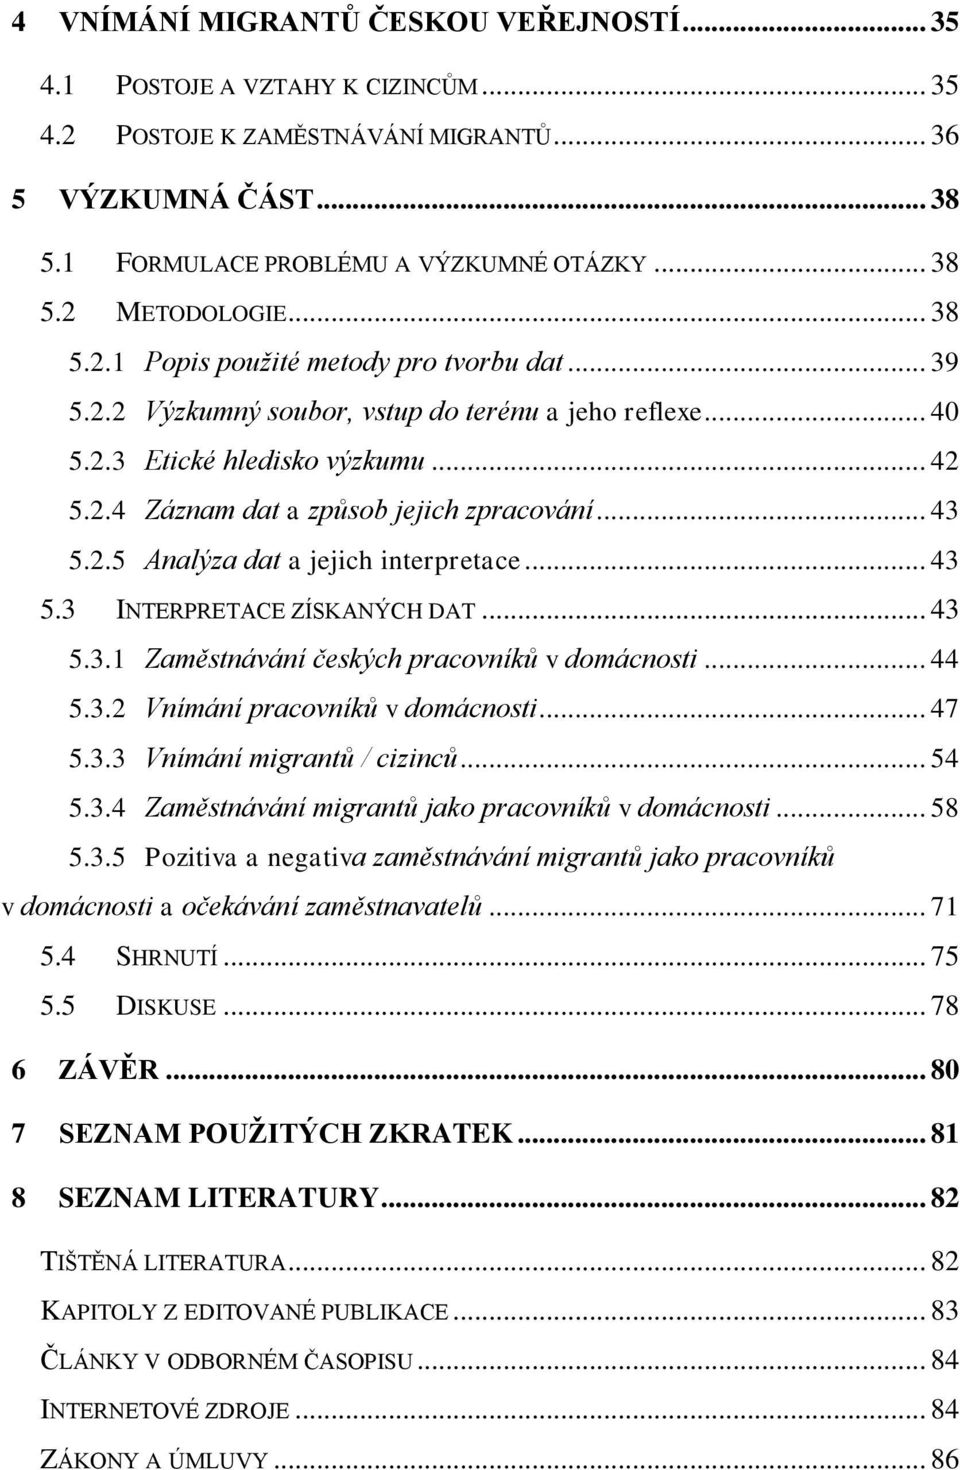 2.5 Analýza dat a jejich interpretace... 43 5.3 INTERPRETACE ZÍSKANÝCH DAT... 43 5.3.1 Zaměstnávání českých pracovníků v domácnosti... 44 5.3.2 Vnímání pracovníků v domácnosti... 47 5.3.3 Vnímání migrantů / cizinců.